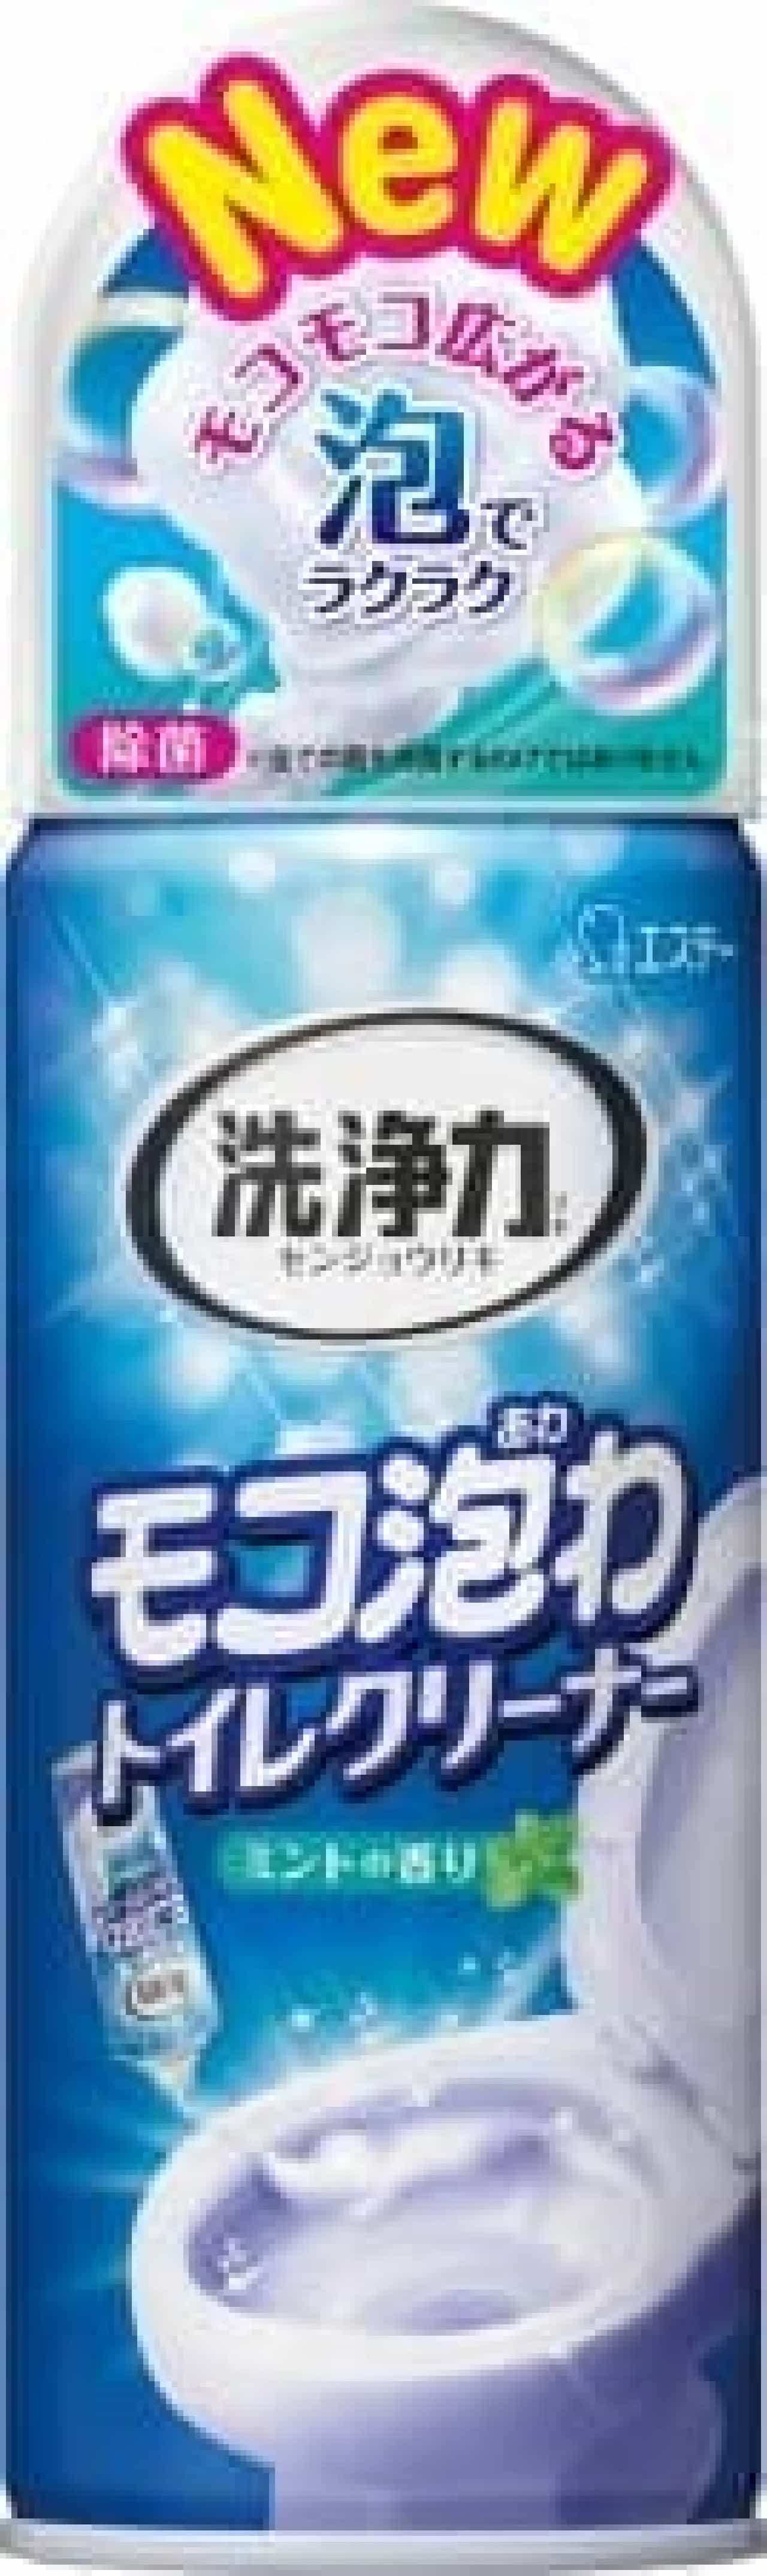 Detergency Moco Foam Toilet Cleaner